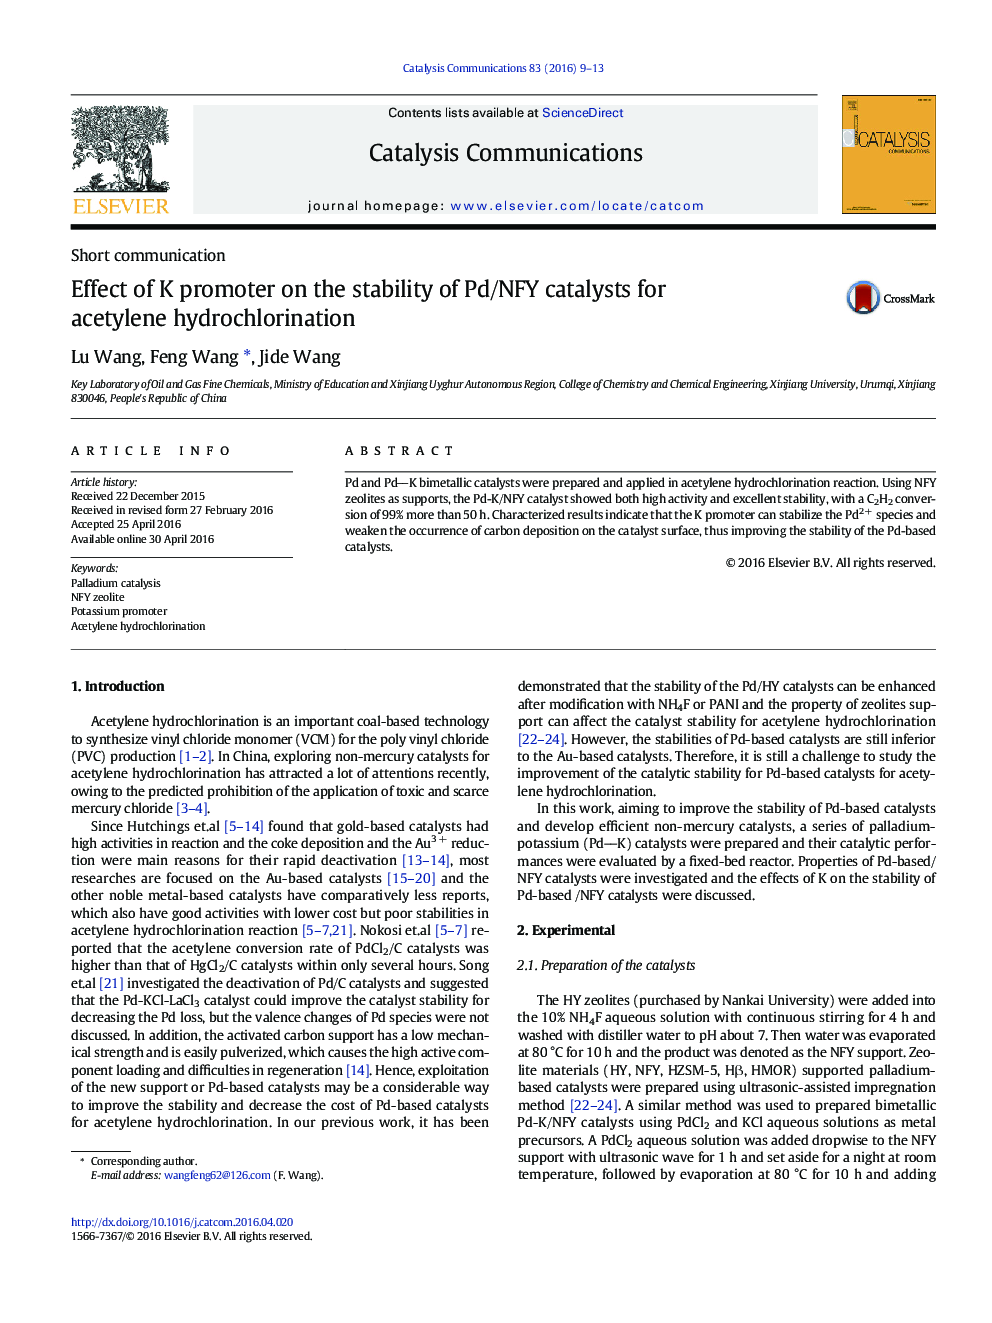 اثر پروموتر K در ثبات کاتالیزور پالادیم / NFY برای hydrochlorination استیلن